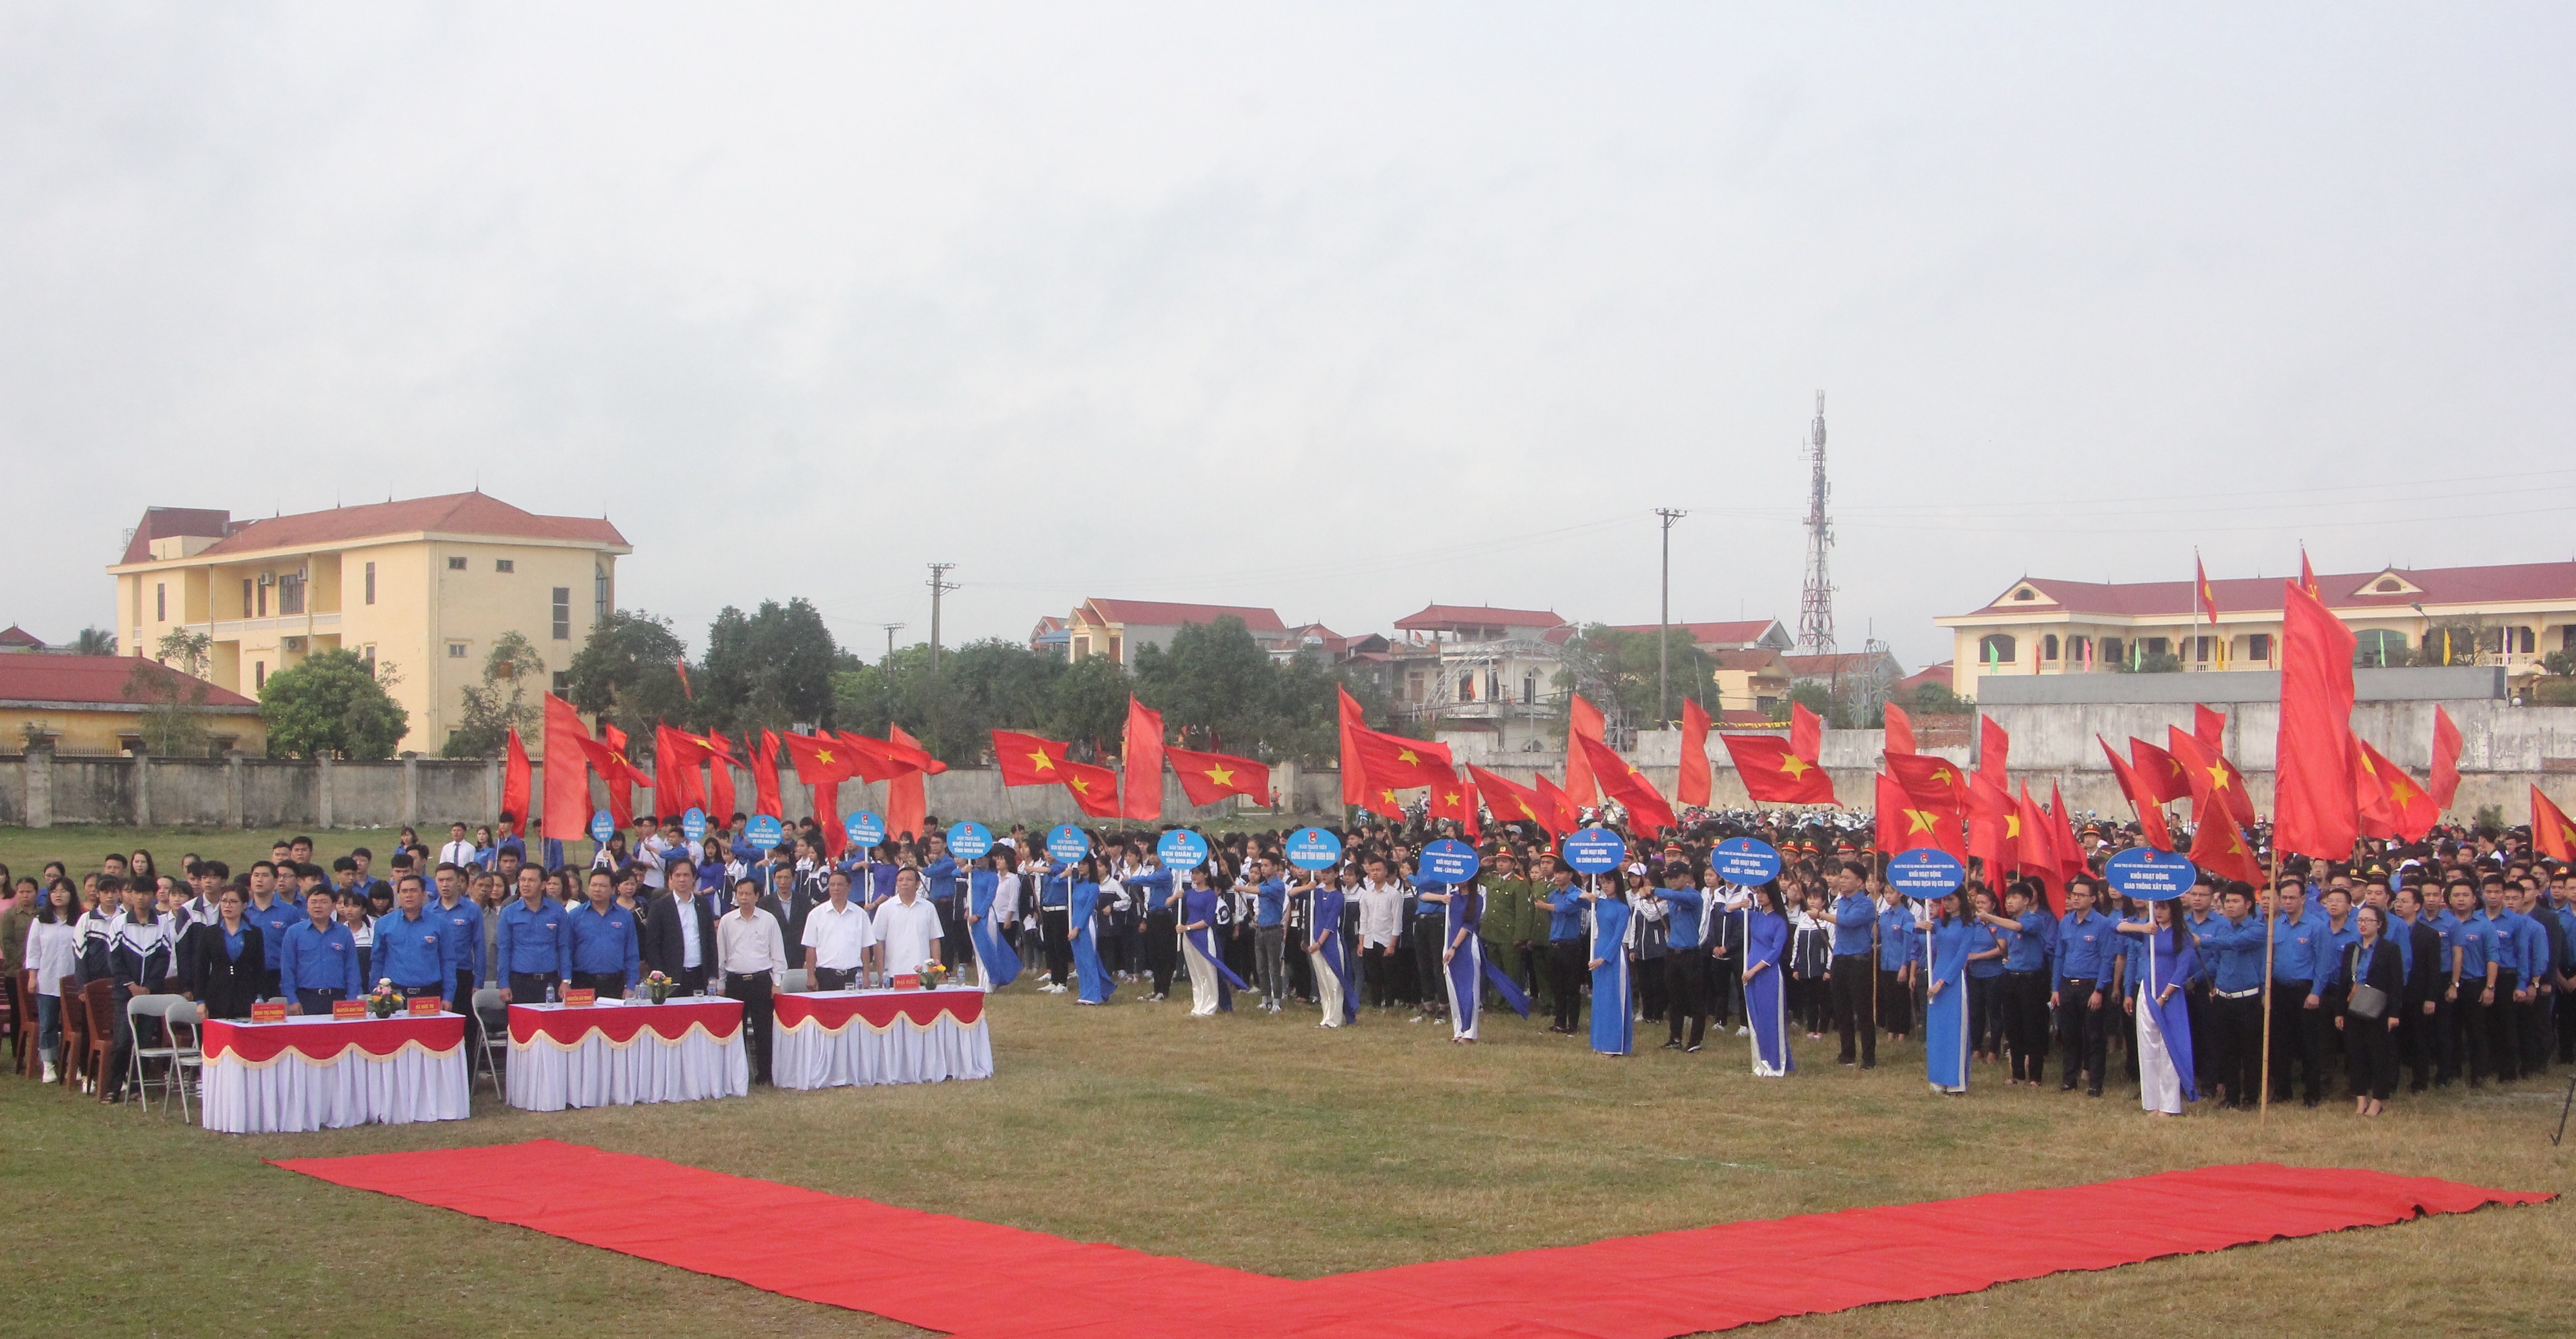 Hơn 1.000 đoàn viên, thanh niên Khối Doanh nghiệp Trung ương và đoàn viên thanh niên tỉnh Ninh Bình đã tham dự chương trình